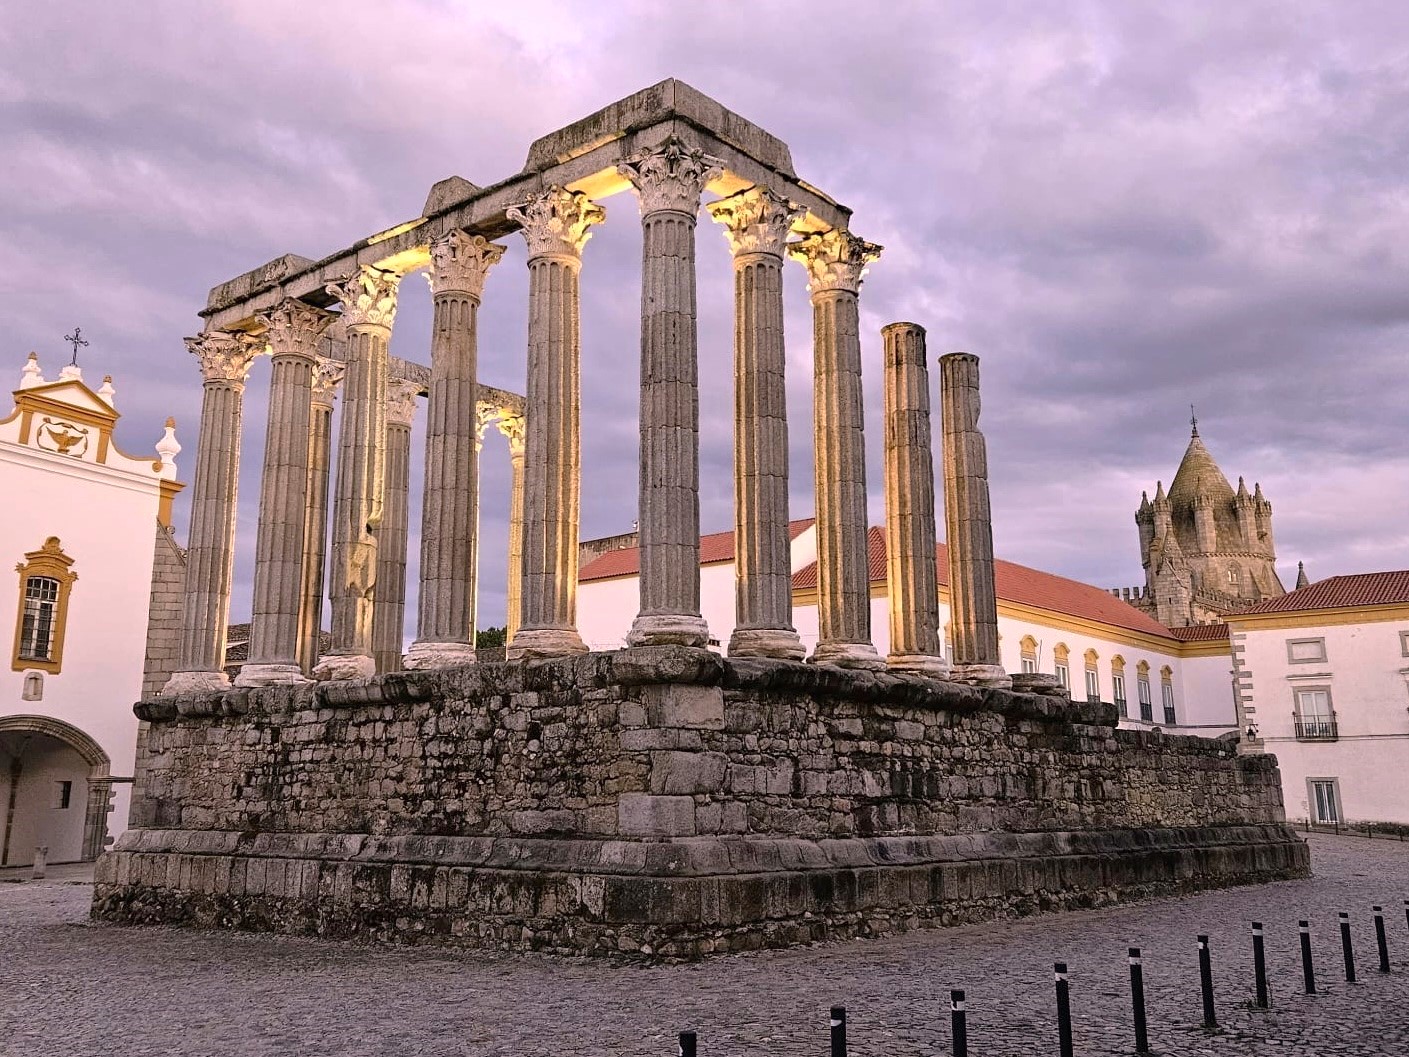 1177 - Tempio romano di Evora - Portogallo